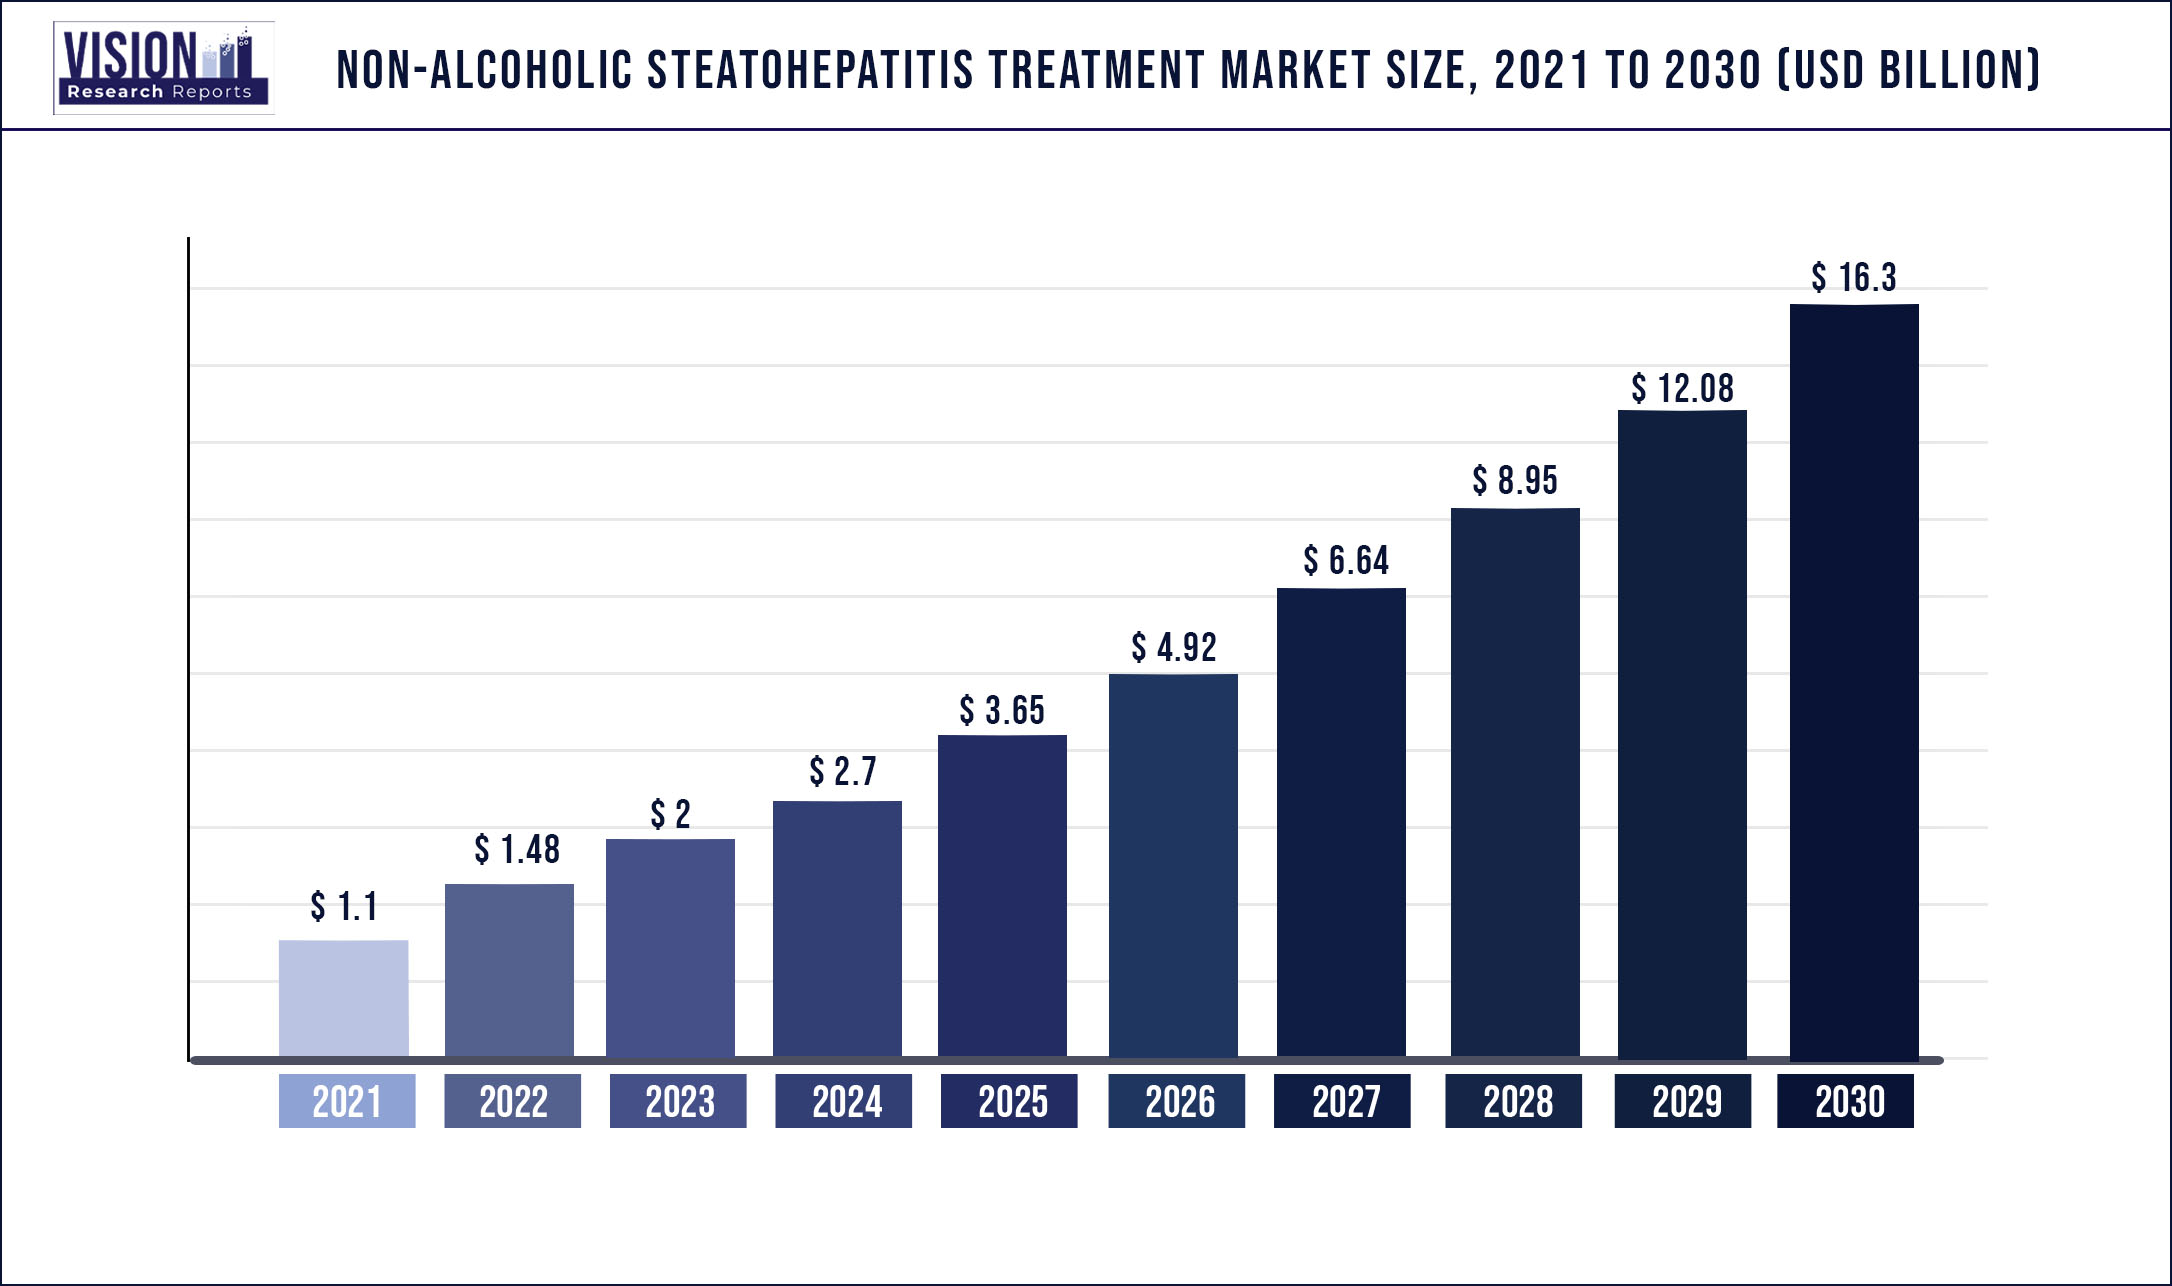 Non-Alcoholic Steatohepatitis Treatment Market Size 2021 to 2030